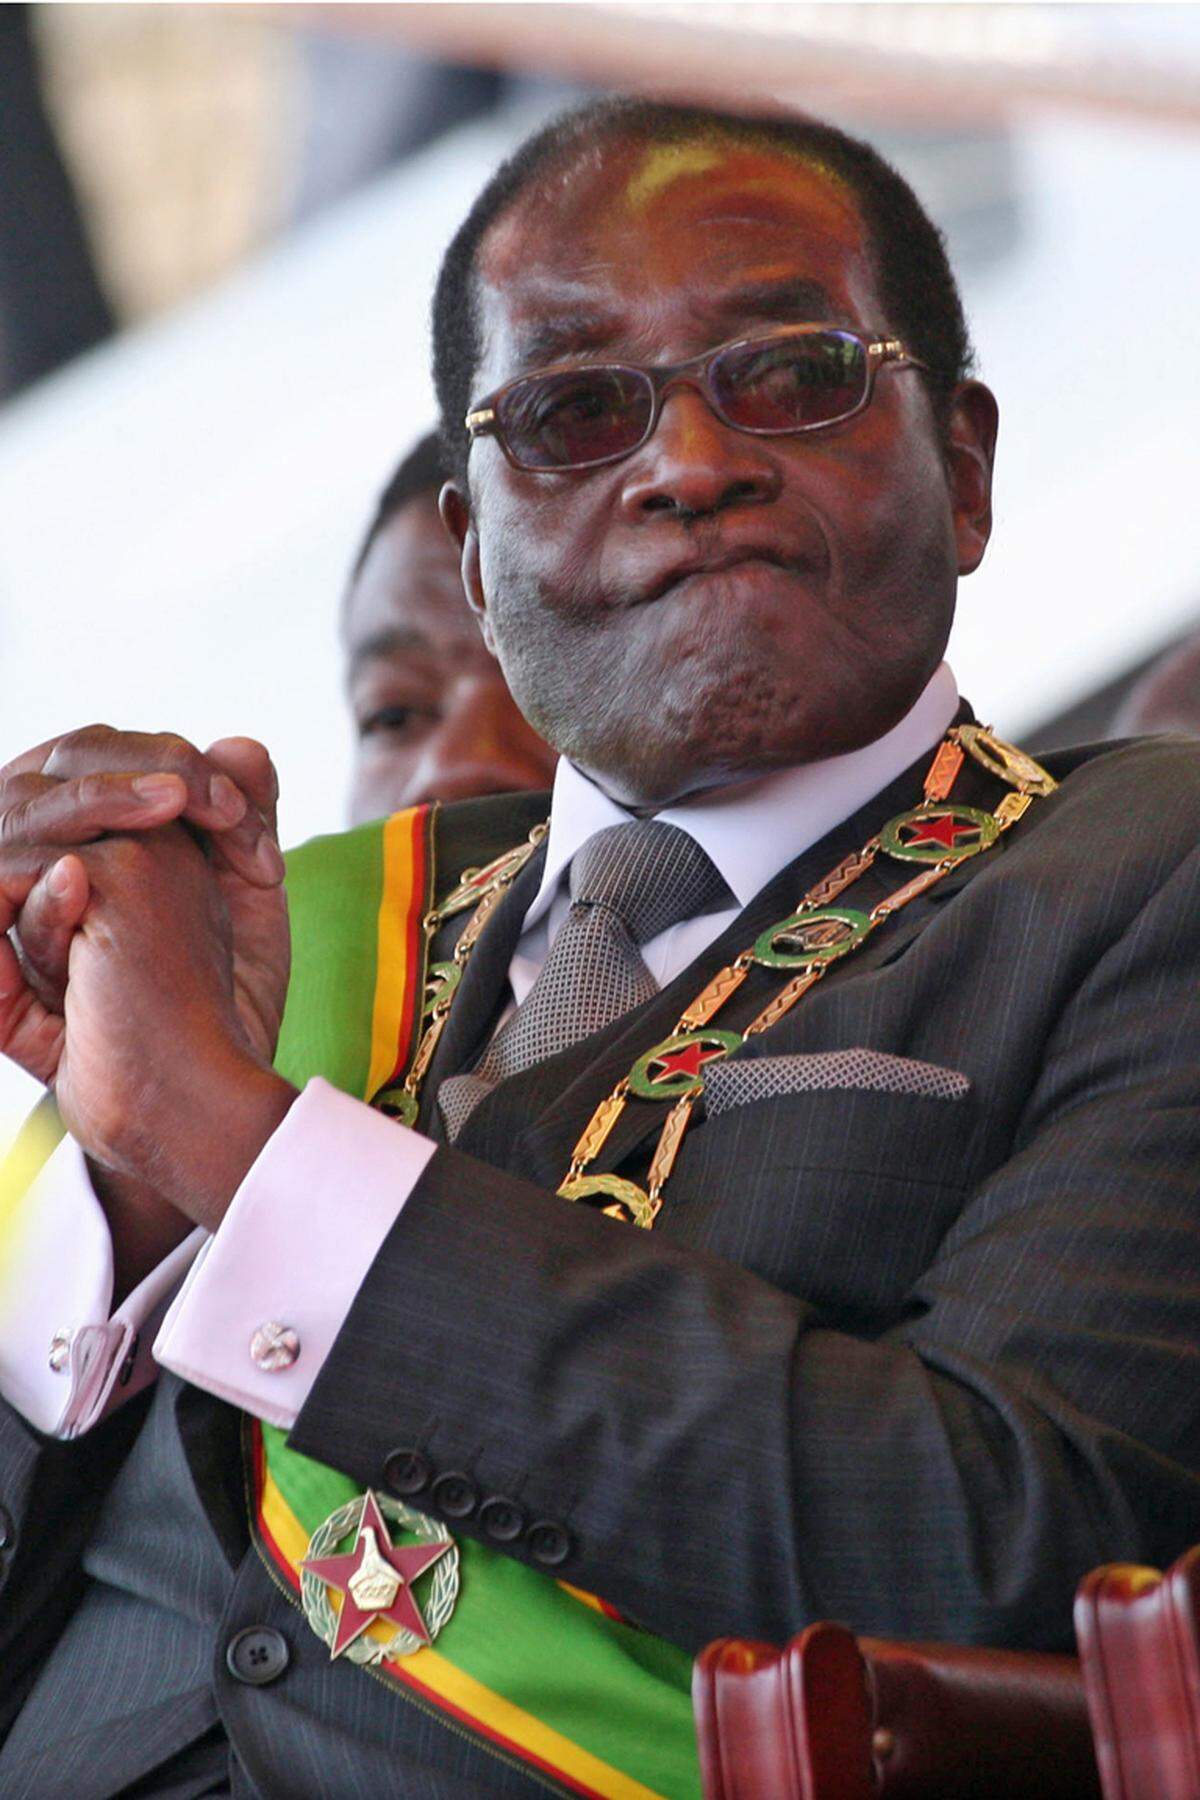 Das gegenwärtig zweitälteste amtierende Staatsoberhaupt der Welt ist auch das umstrittenste: Simbabwes Präsident Robert Mugabe regiert sein Land seit 1987, zuvor war der einstige Freiheitskämpfer und heutige Autokrat von 1980-87 Premierminister. Auch nach diesen insgesamt 33 Jahren an der Spitze des Staates und nach seinem 89. Geburtstag, den er am 21. Februar gefeiert hat, zeigt Mugabe keine Bereitschaft, das Ruder aus der Hand zu legen und will ein weiteres Mal als Präsident kandidieren.